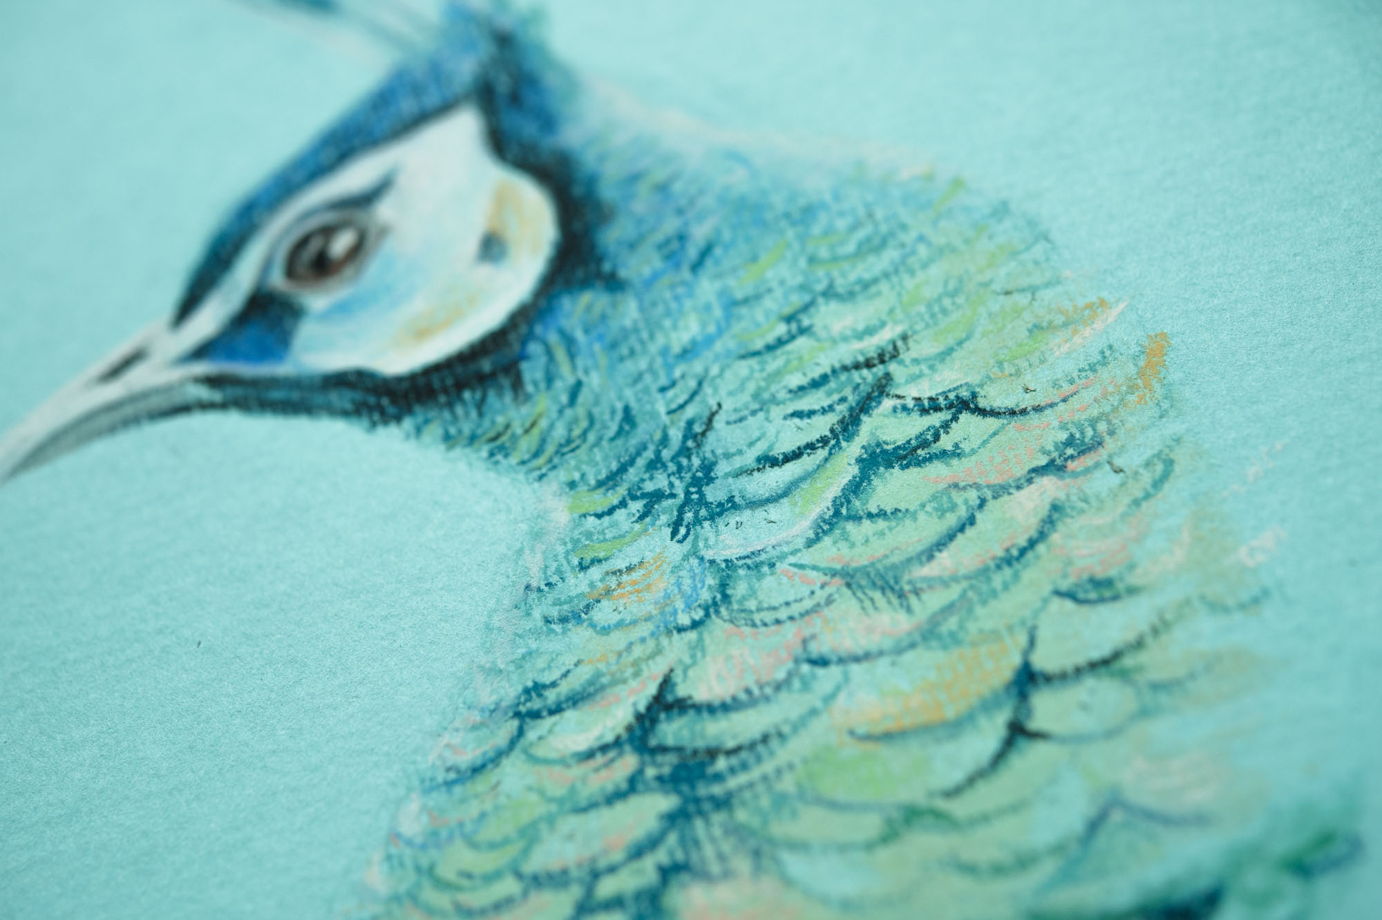 Картина птицы пастелью на бирюзовом фоне